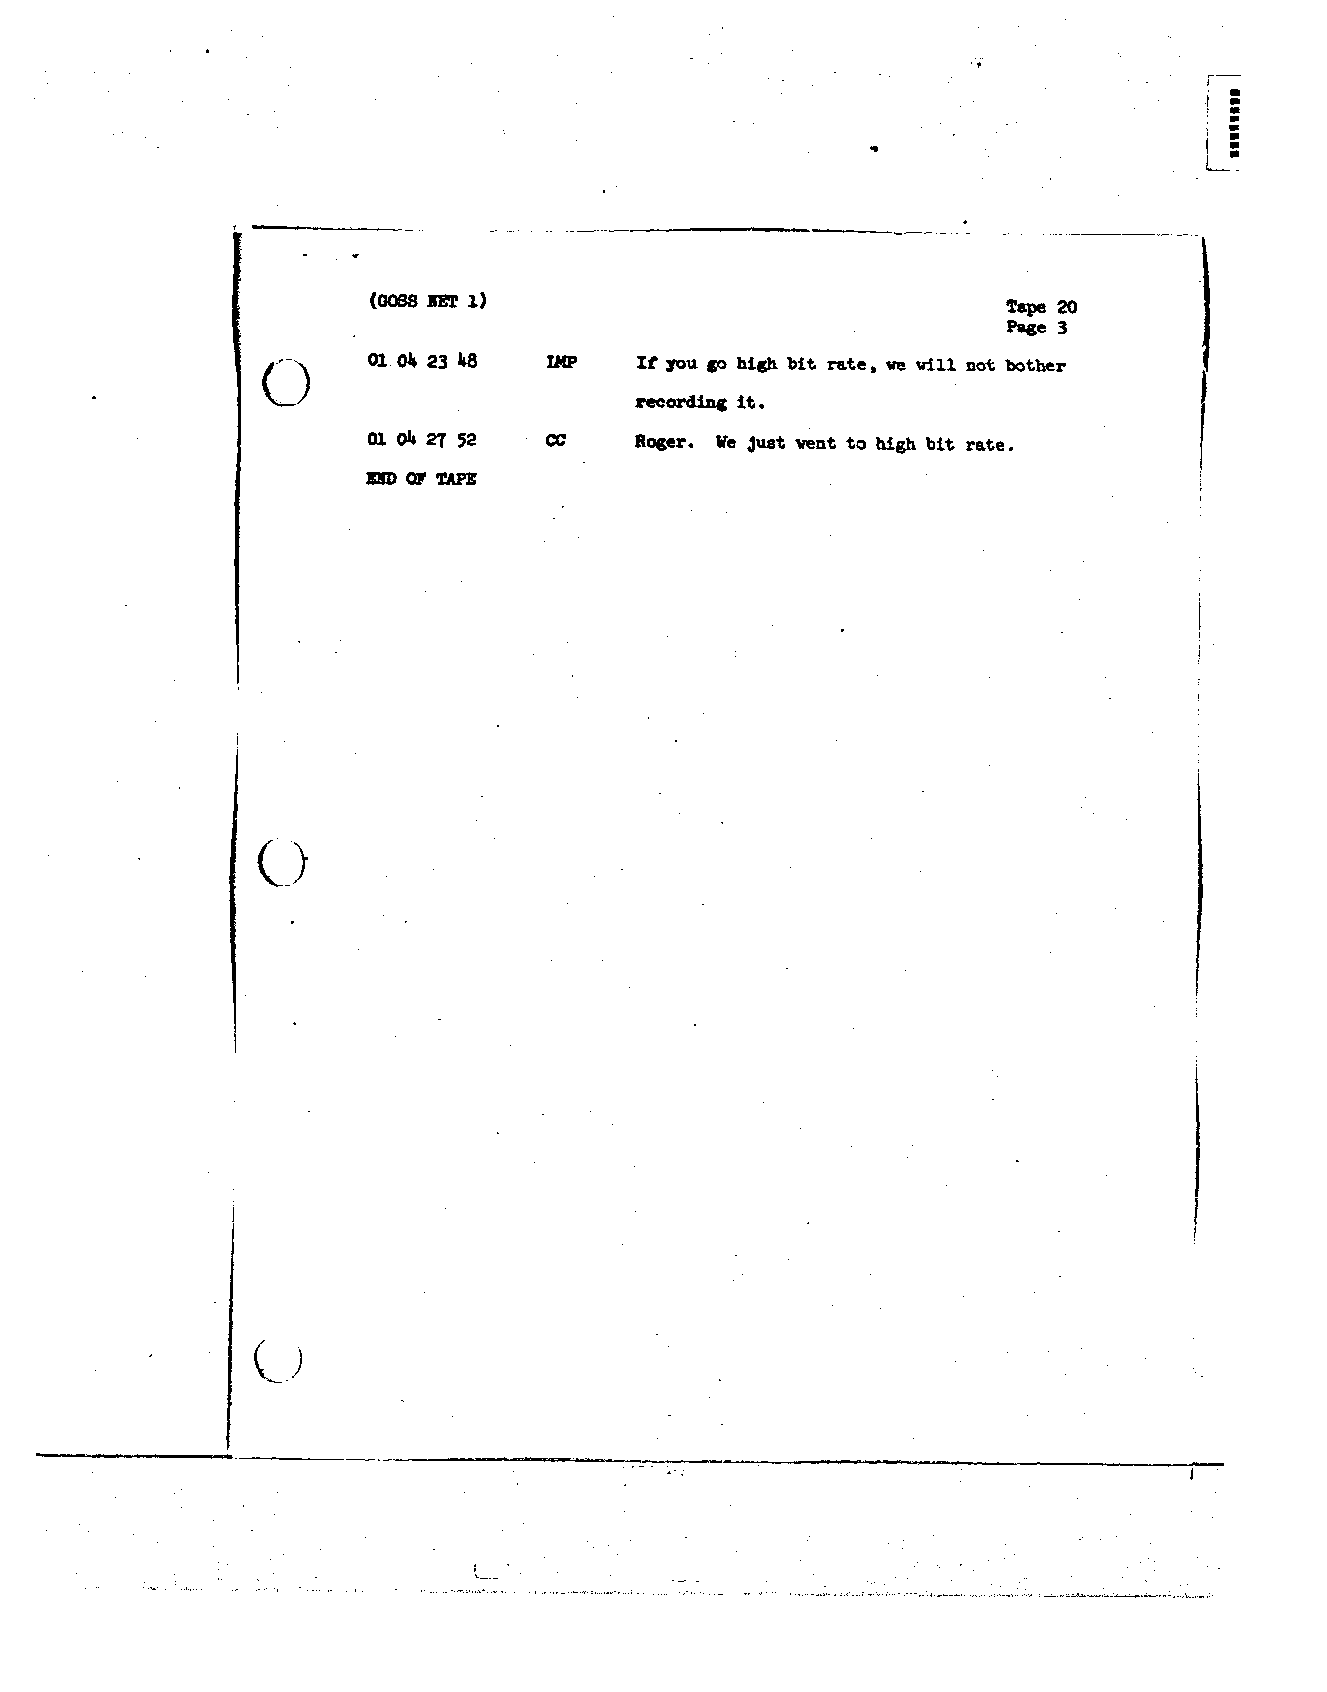 Page 156 of Apollo 8’s original transcript